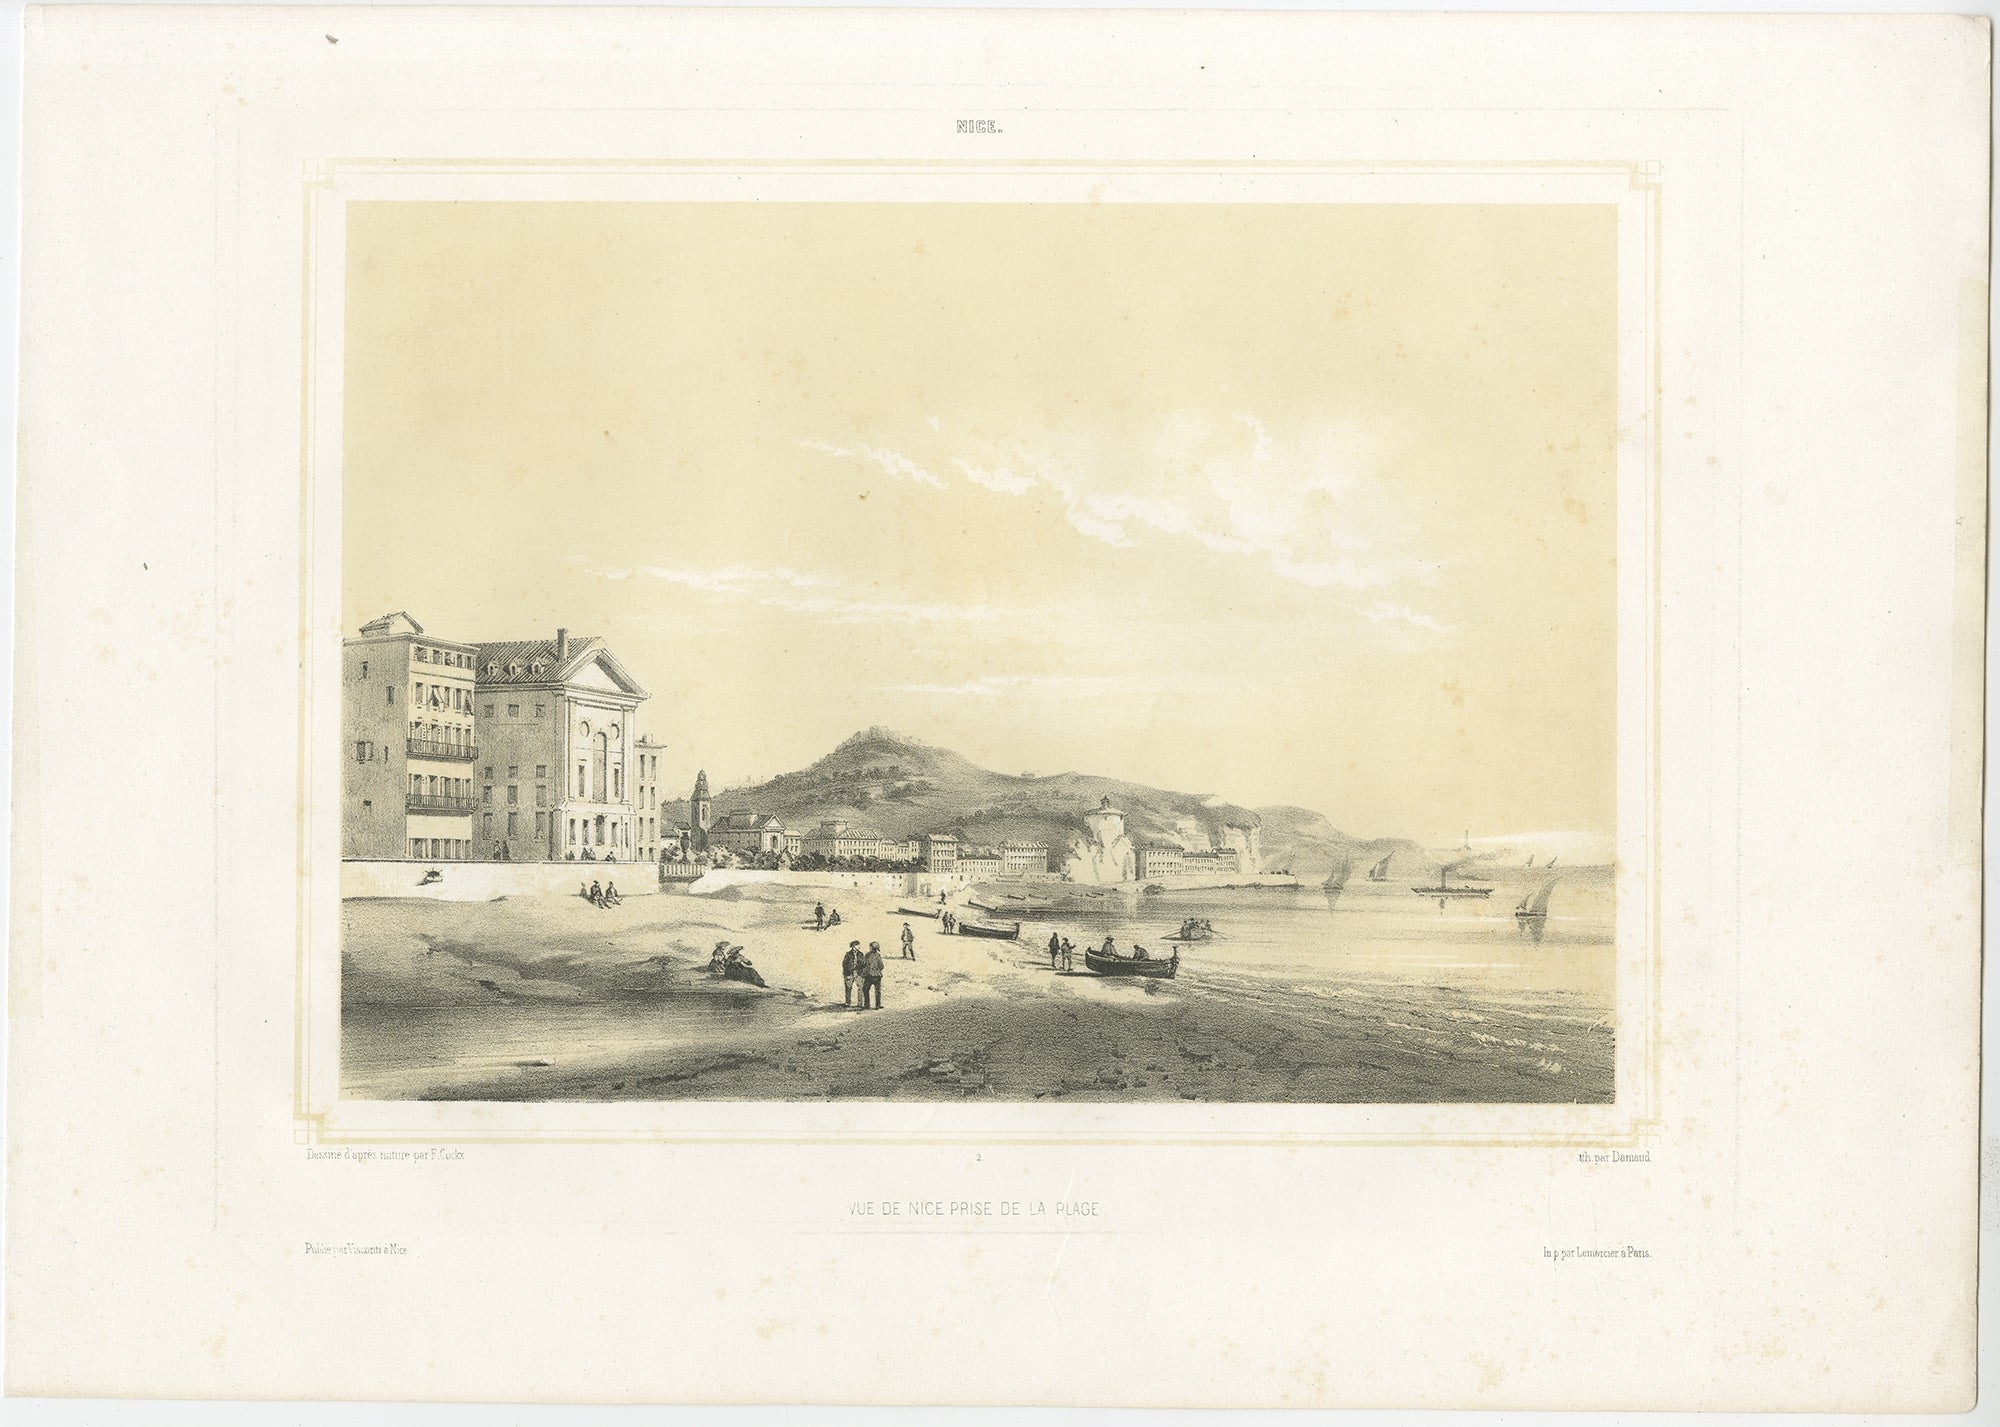 Gravure ancienne intitulée 'Vue de Nice prise de la Plage'. Impression ancienne originale de la ville de Nice vue de la plage, France. Cette gravure provient de la série 